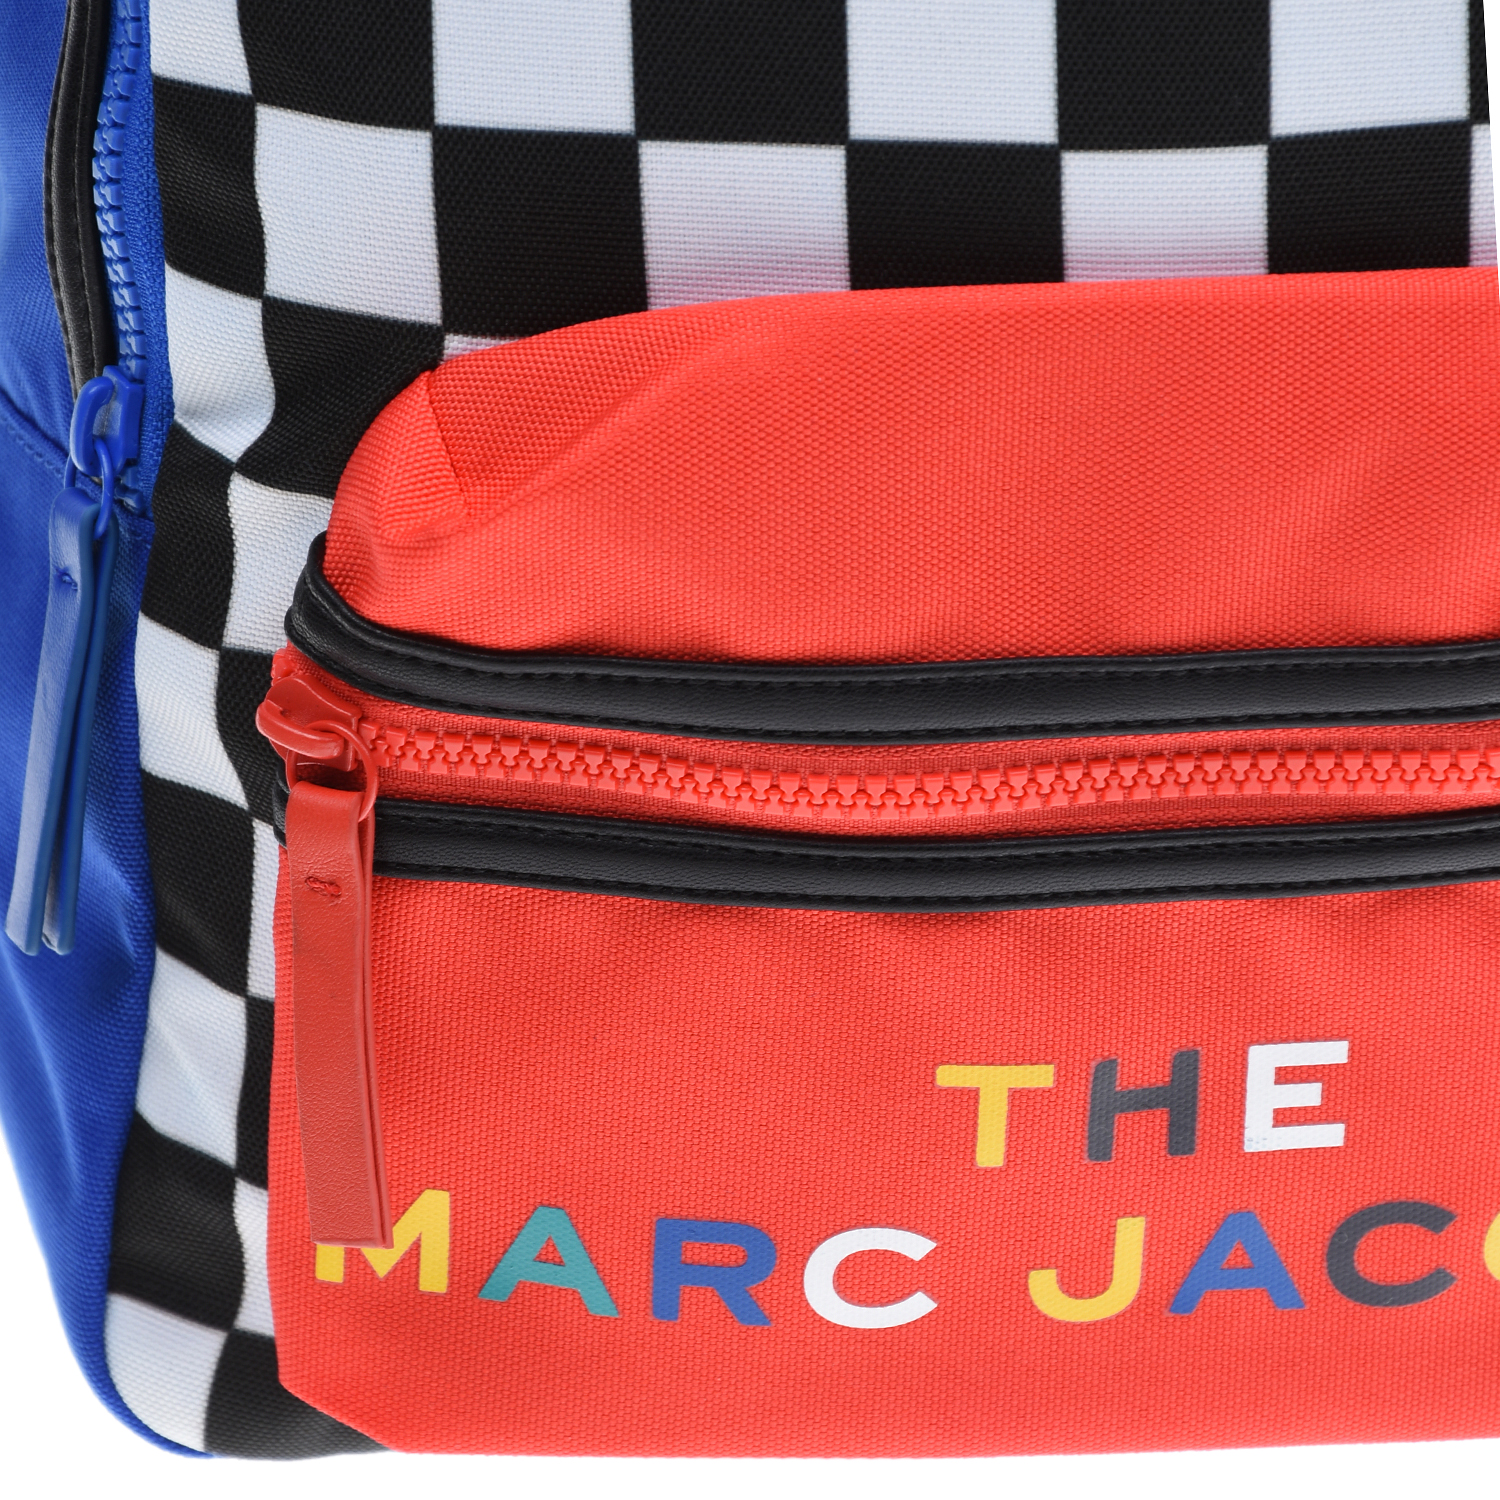 Рюкзак с шахматным принтом 40х12х28 см Little Marc Jacobs детский, размер unica, цвет мультиколор - фото 7